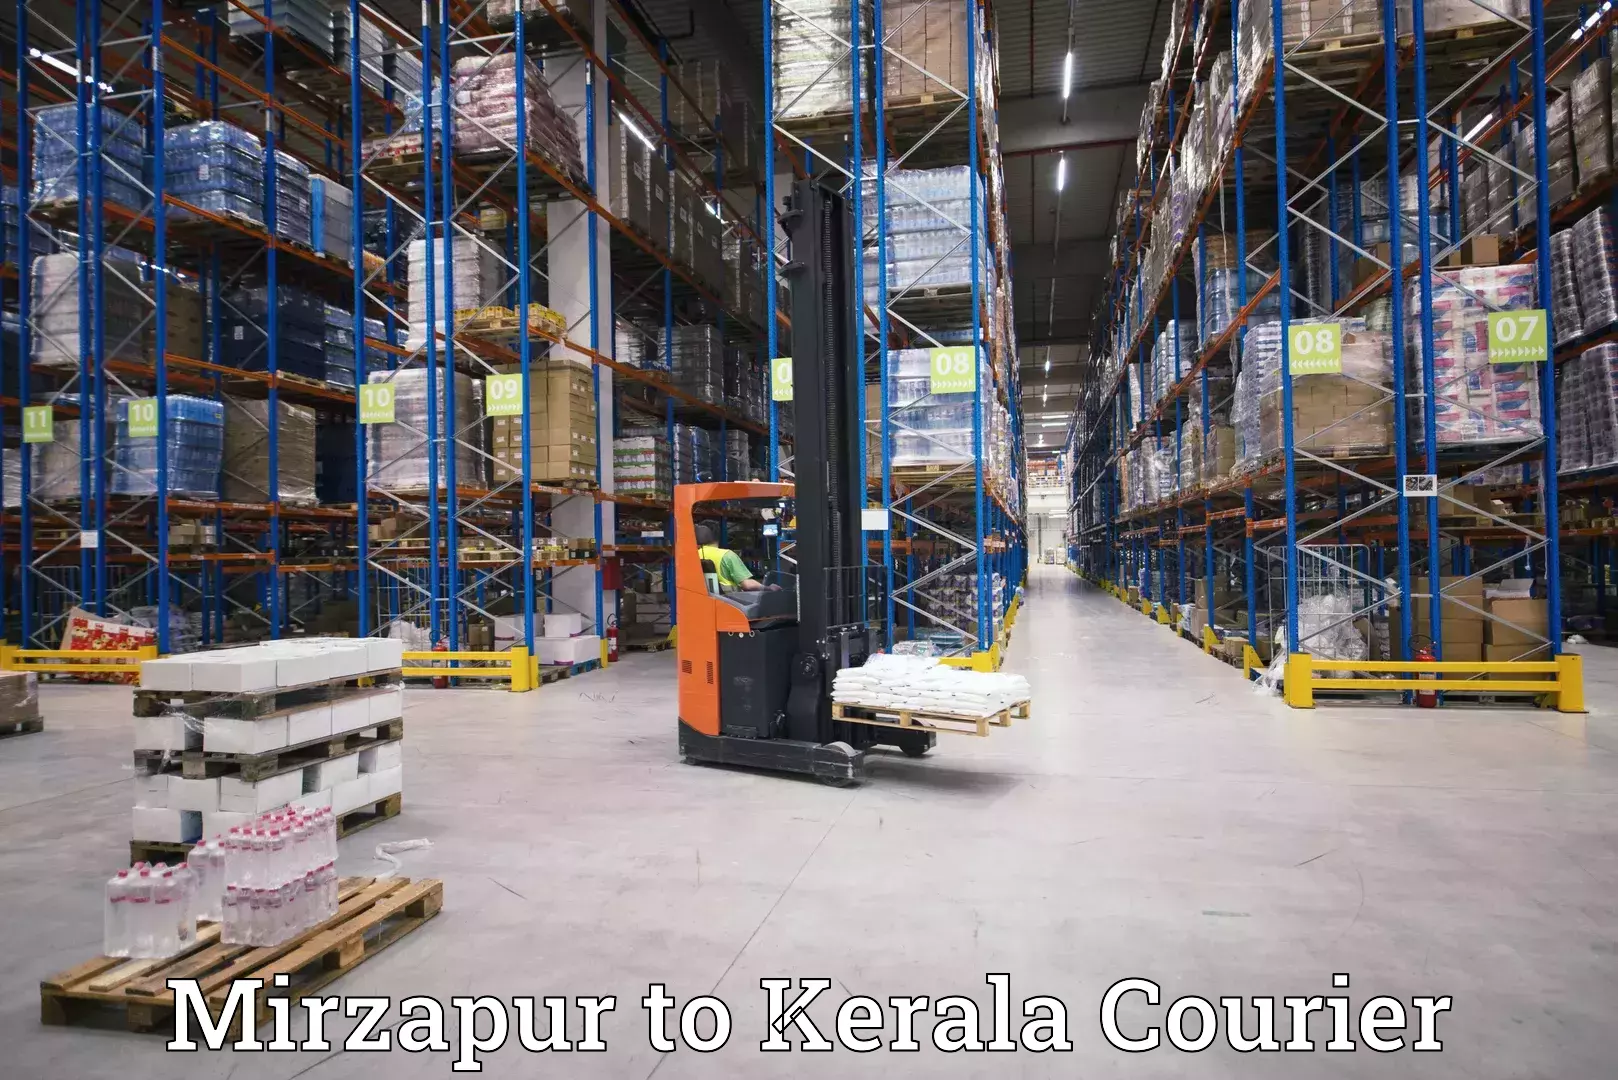 High-speed parcel service Mirzapur to Shoranur